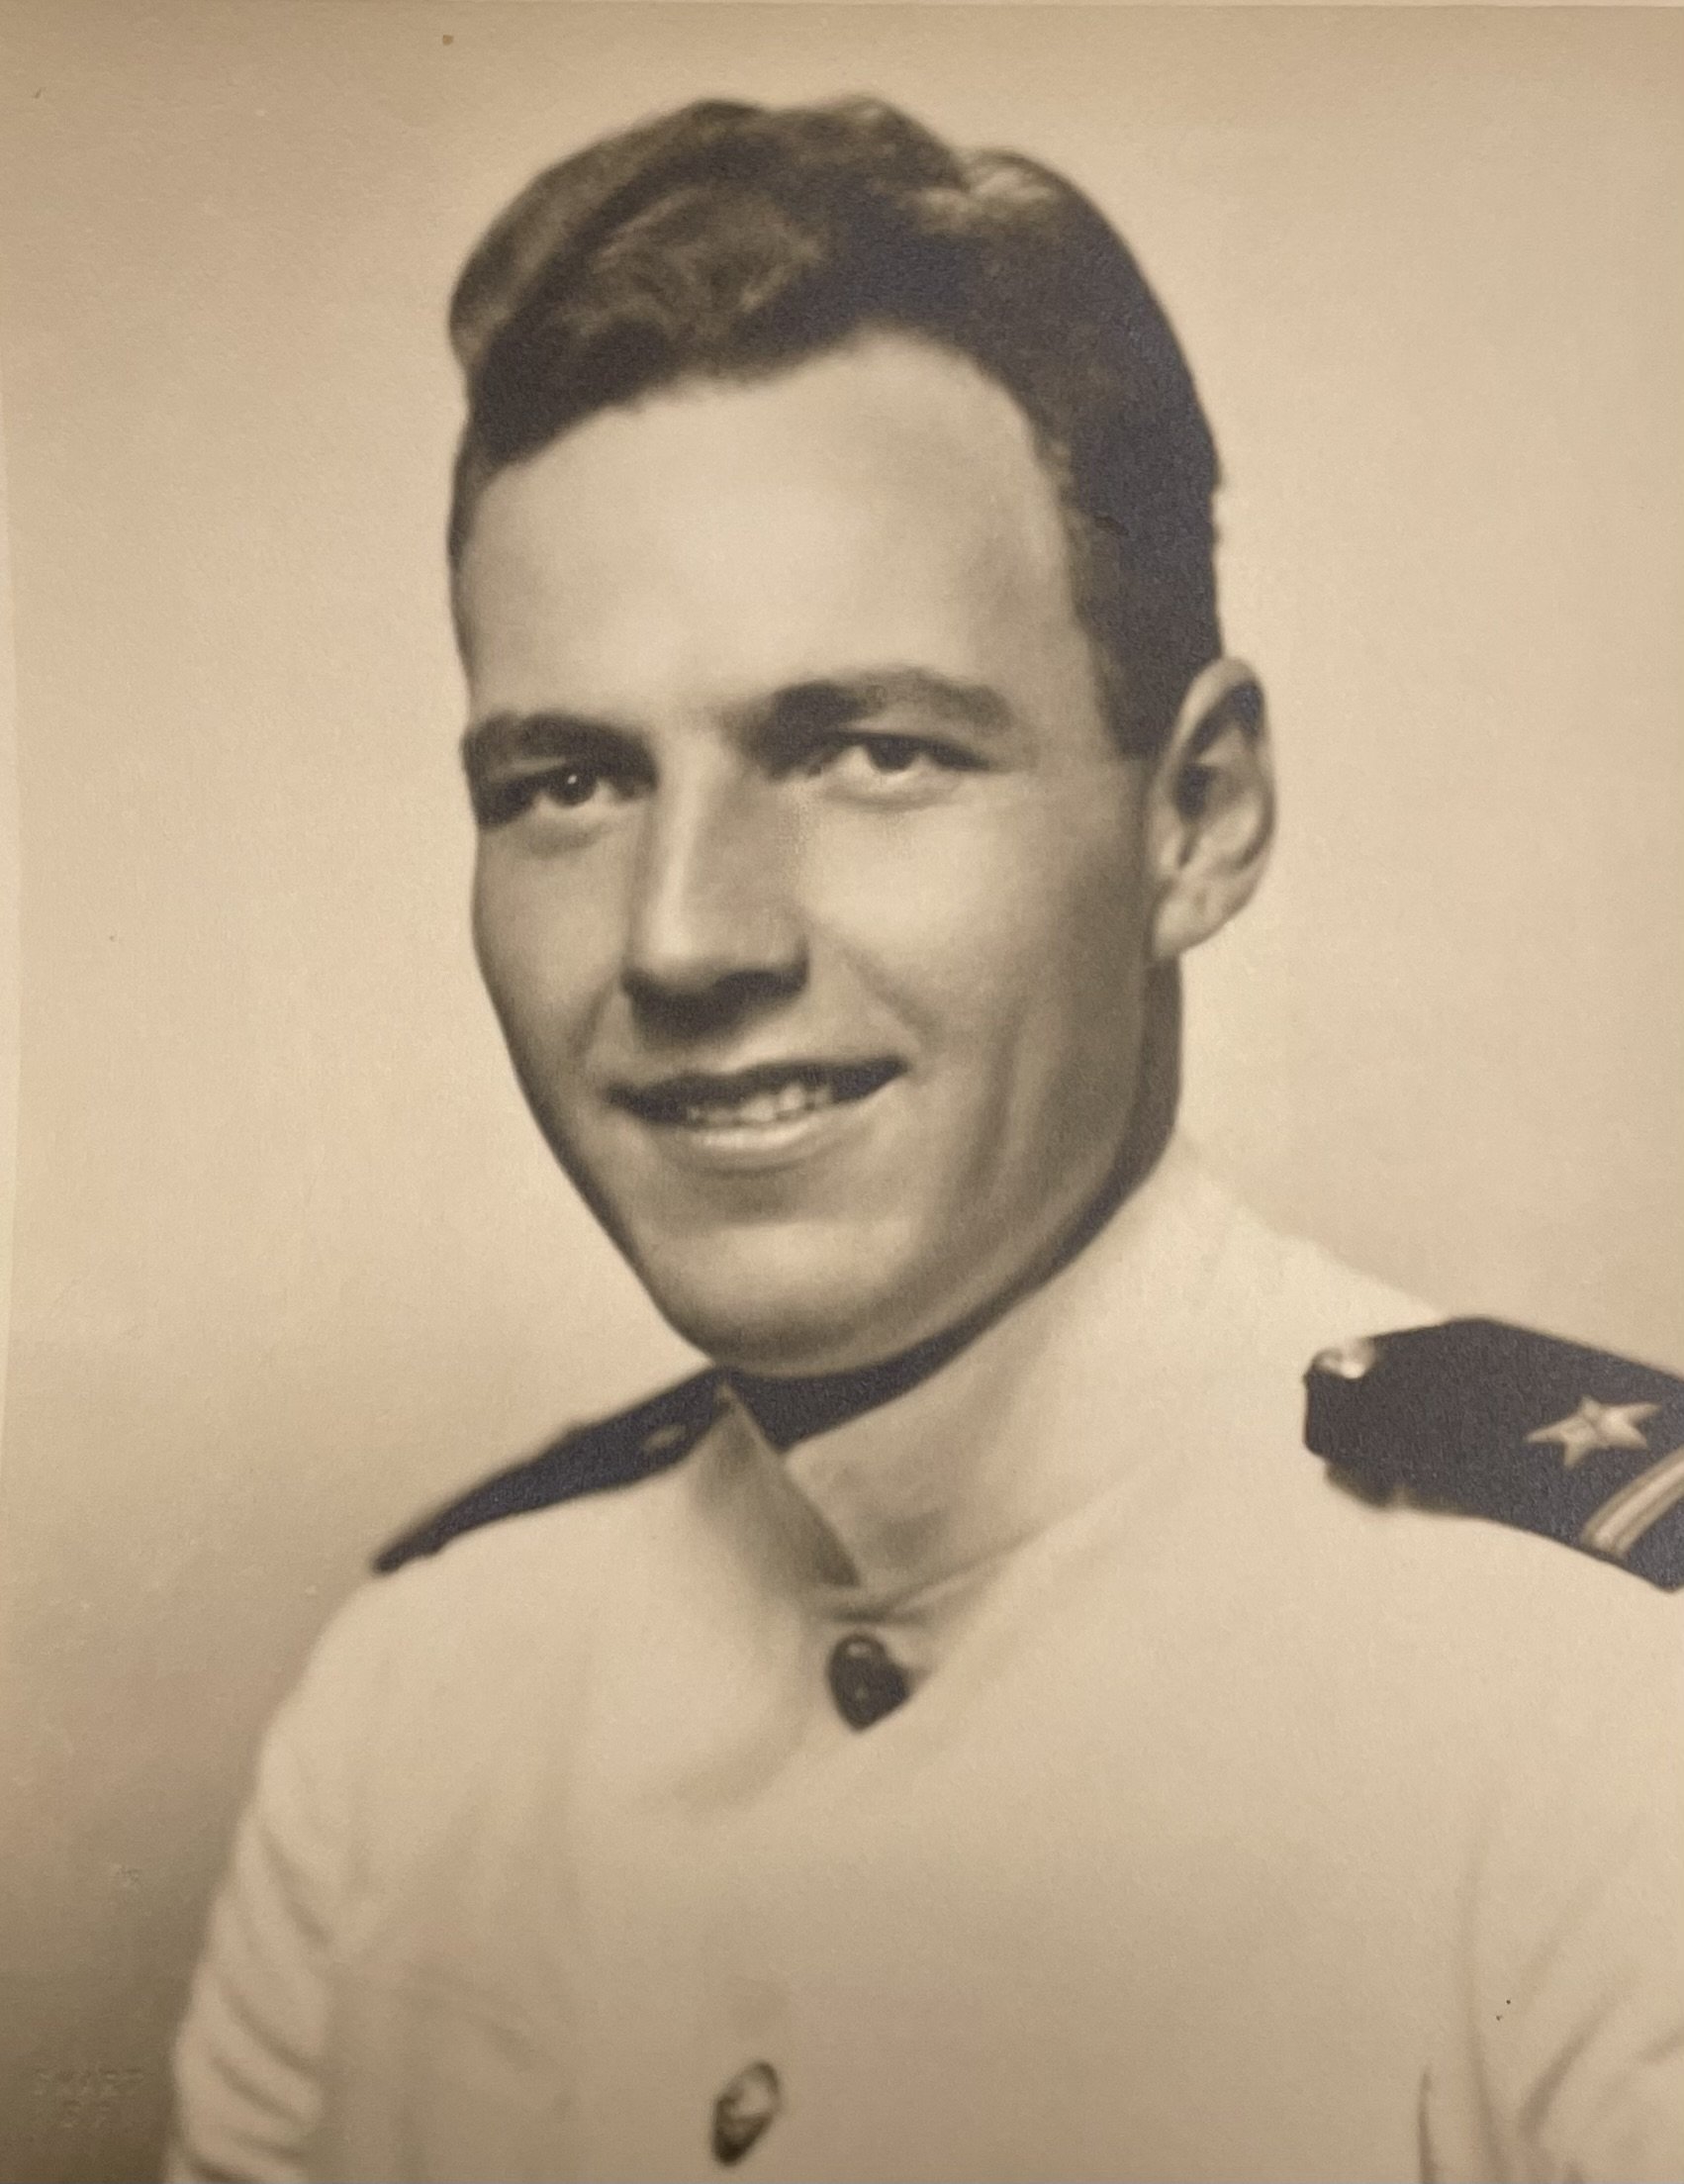 Ensign Robert E. Weaver